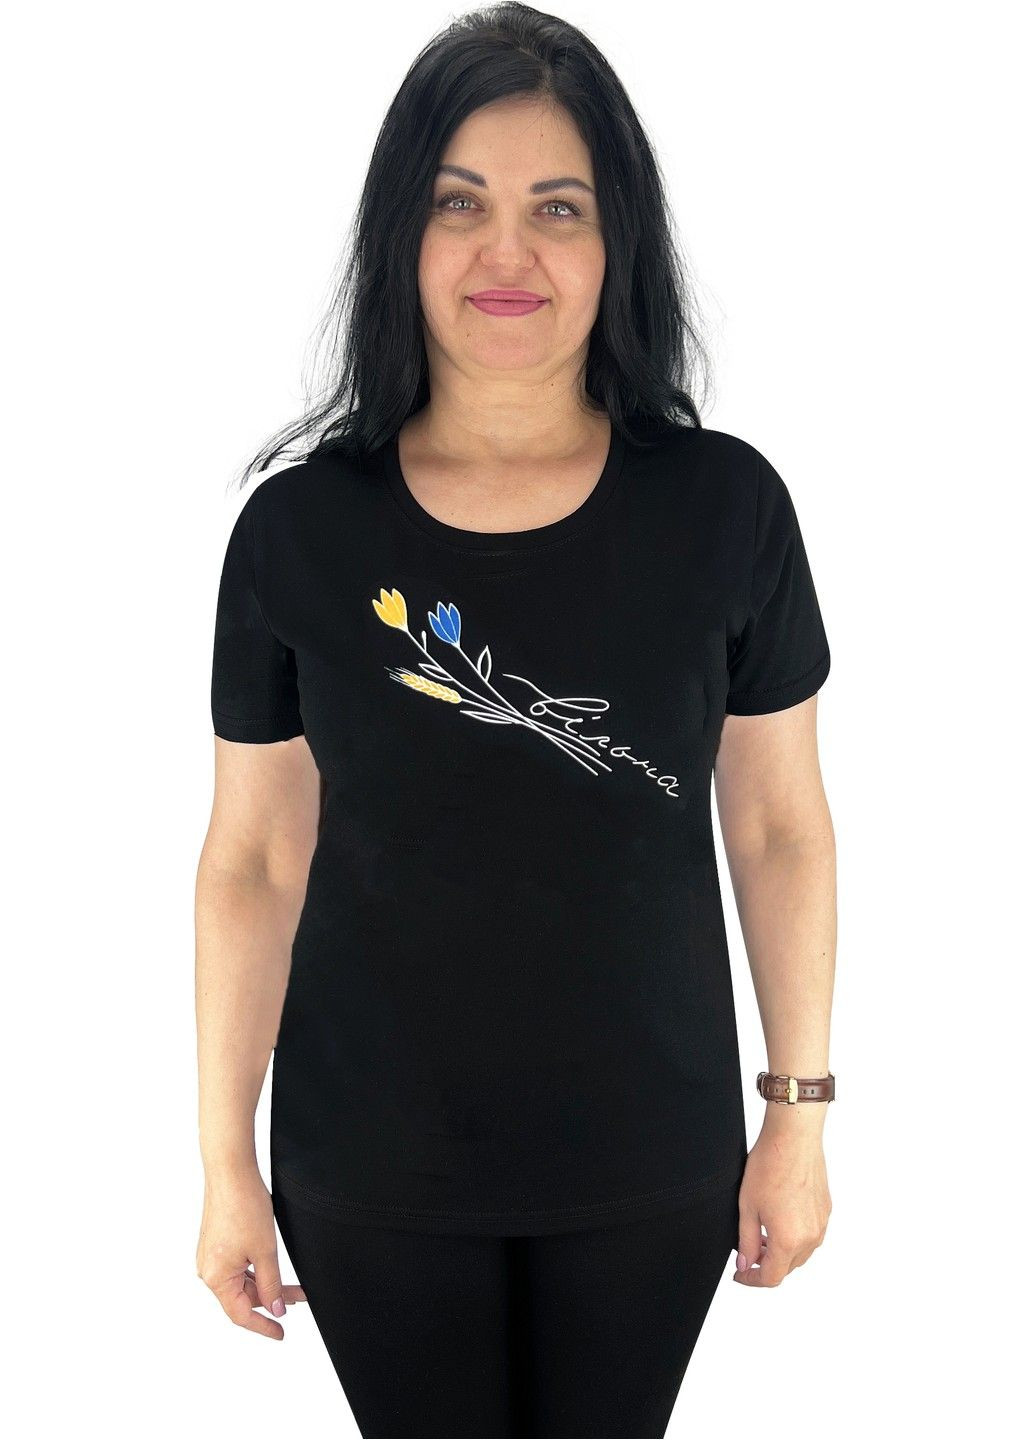 Черная всесезон футболка женская с накатом цветы с коротким рукавом Жемчужина стилей 4695